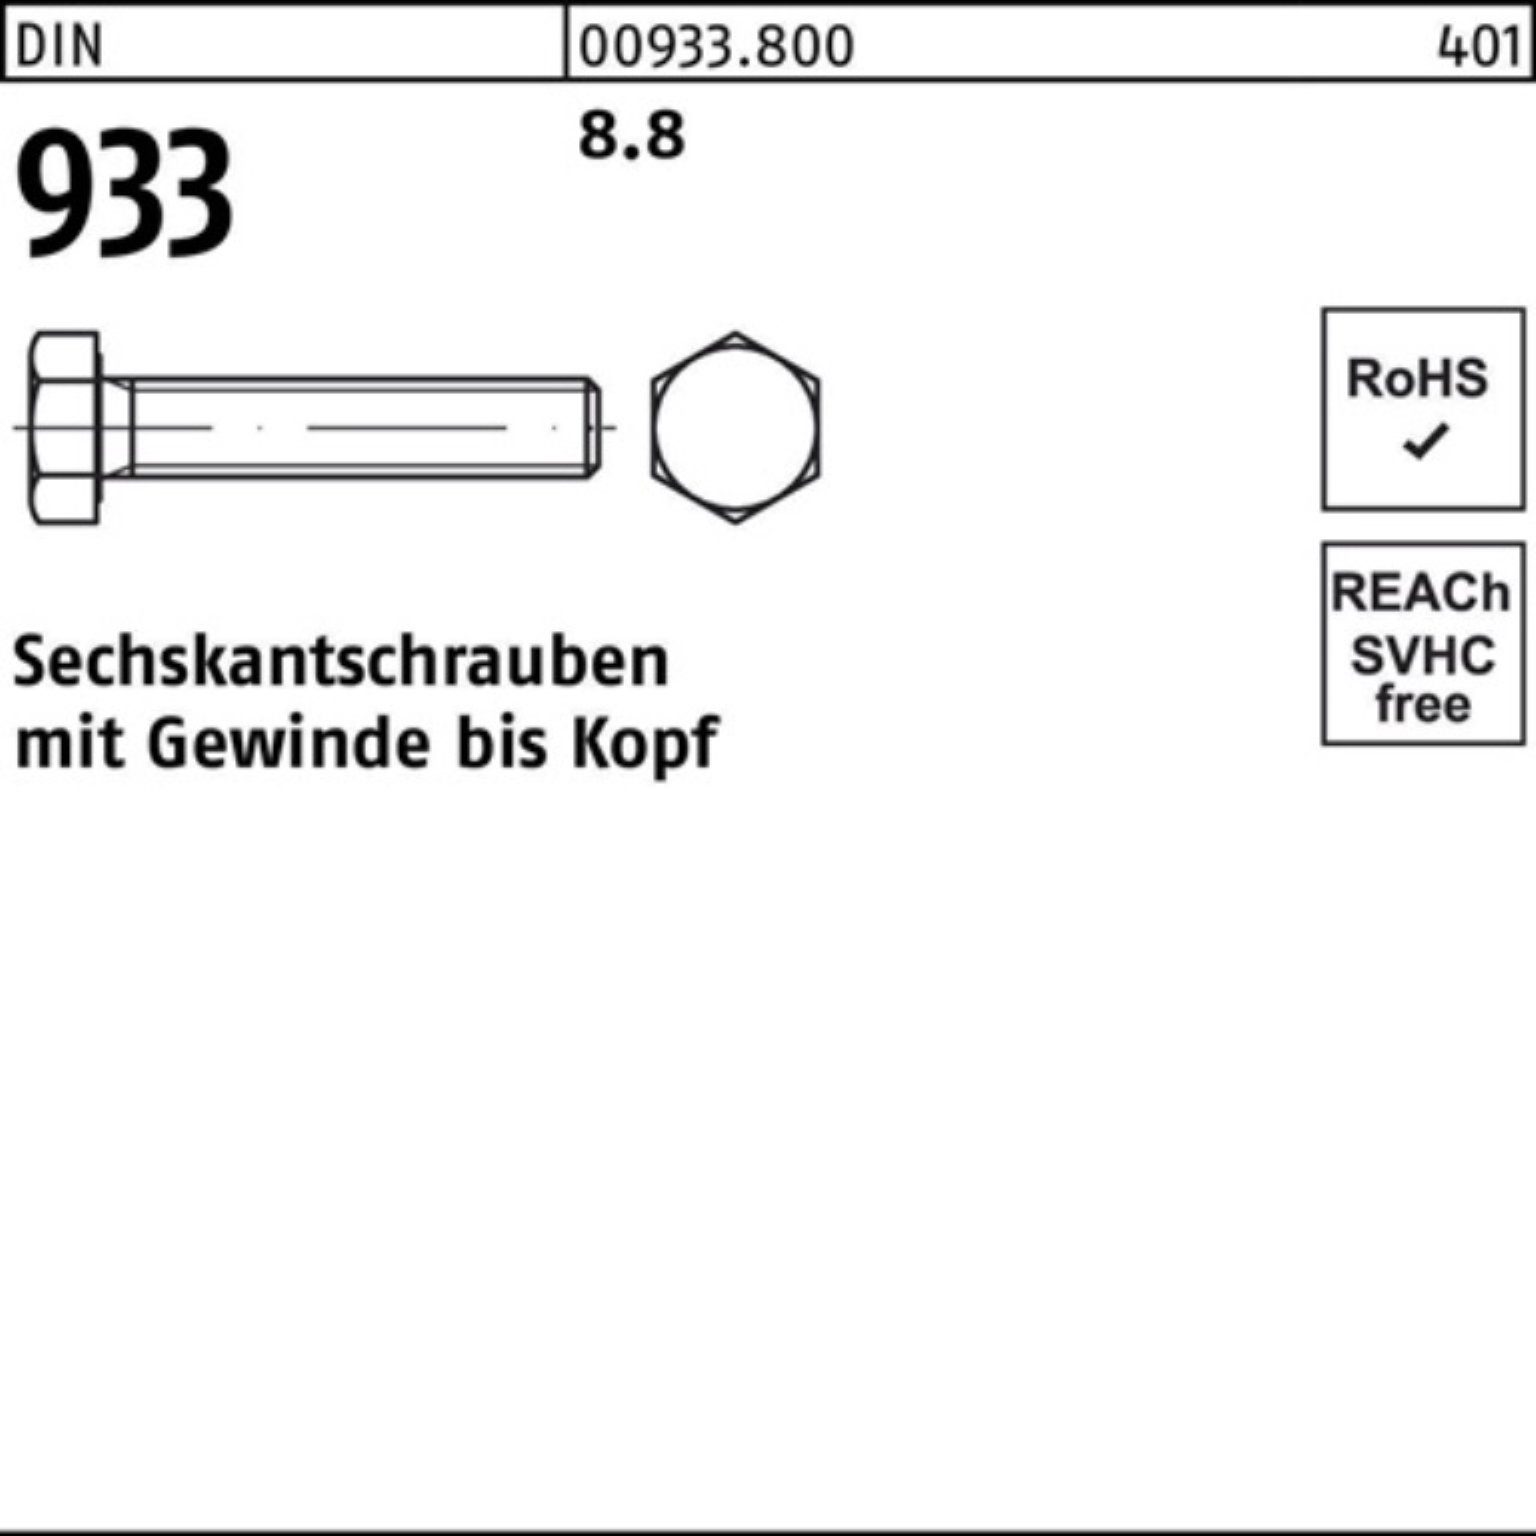 preisoptimierung Reyher Sechskantschraube 10 Sechskantschraube 160 DIN Stück M20x DIN VG 8.8 933 933 Pack 100er